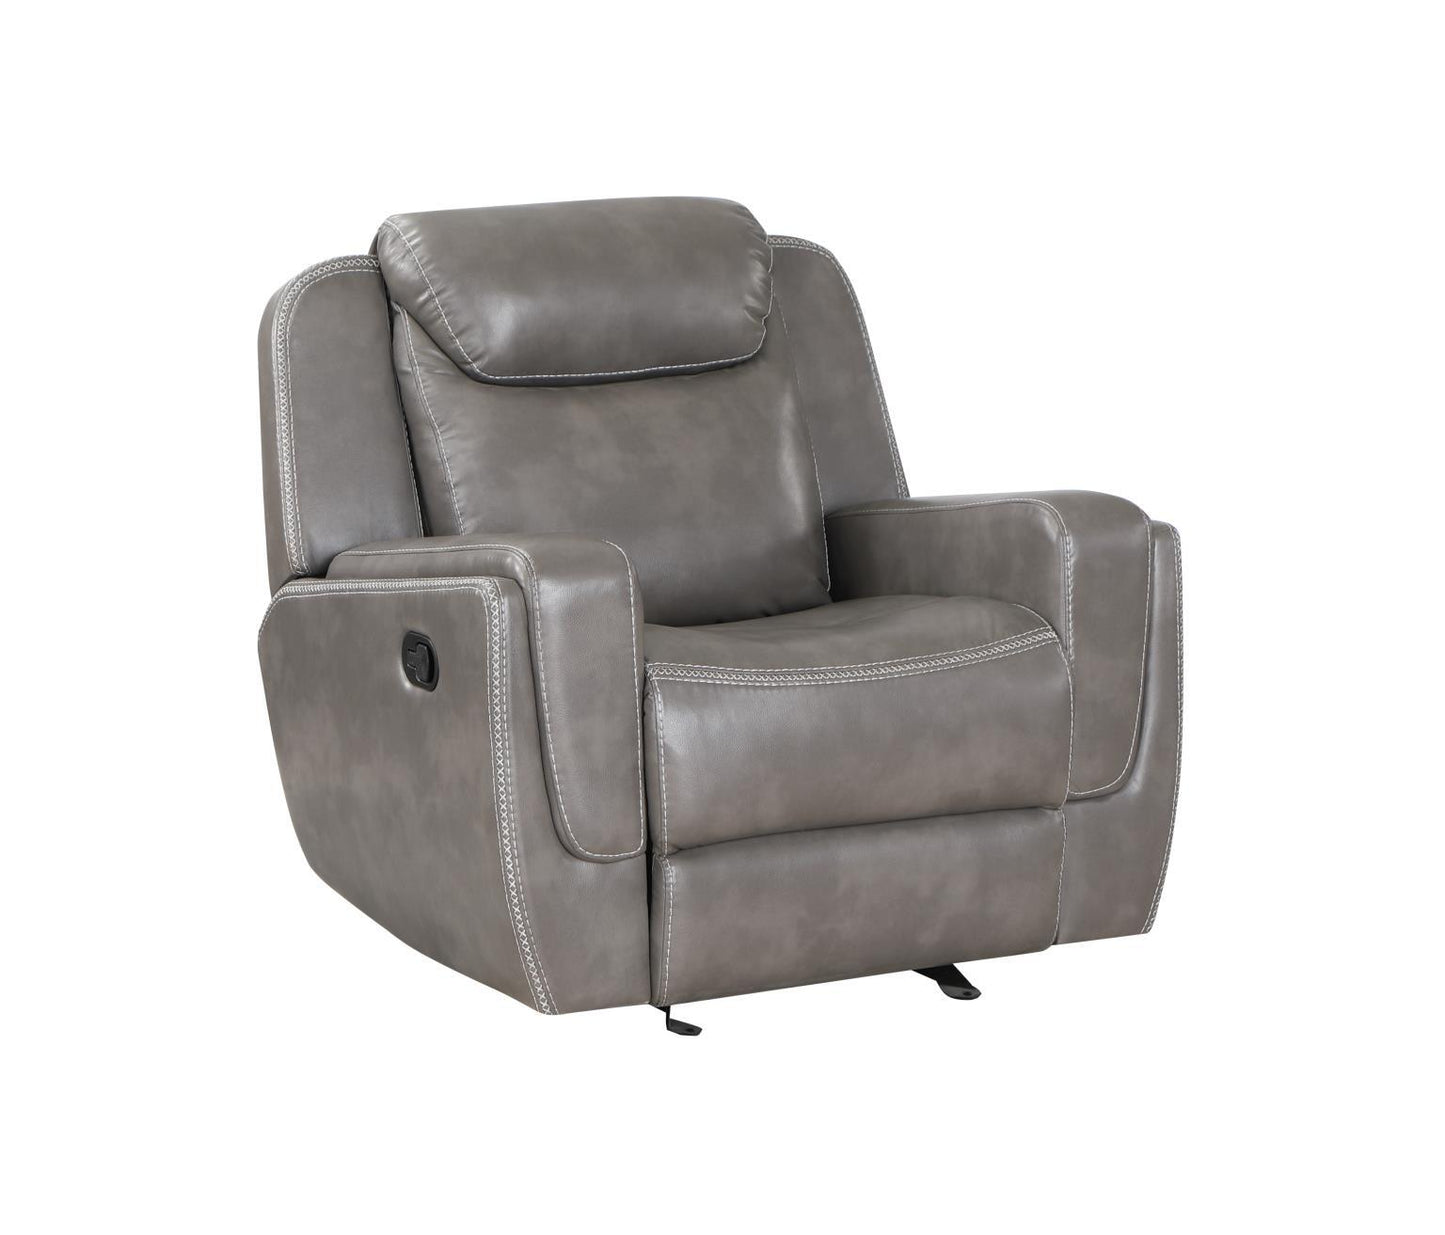 ASPEN 1 Seater Reclining Chair Grey